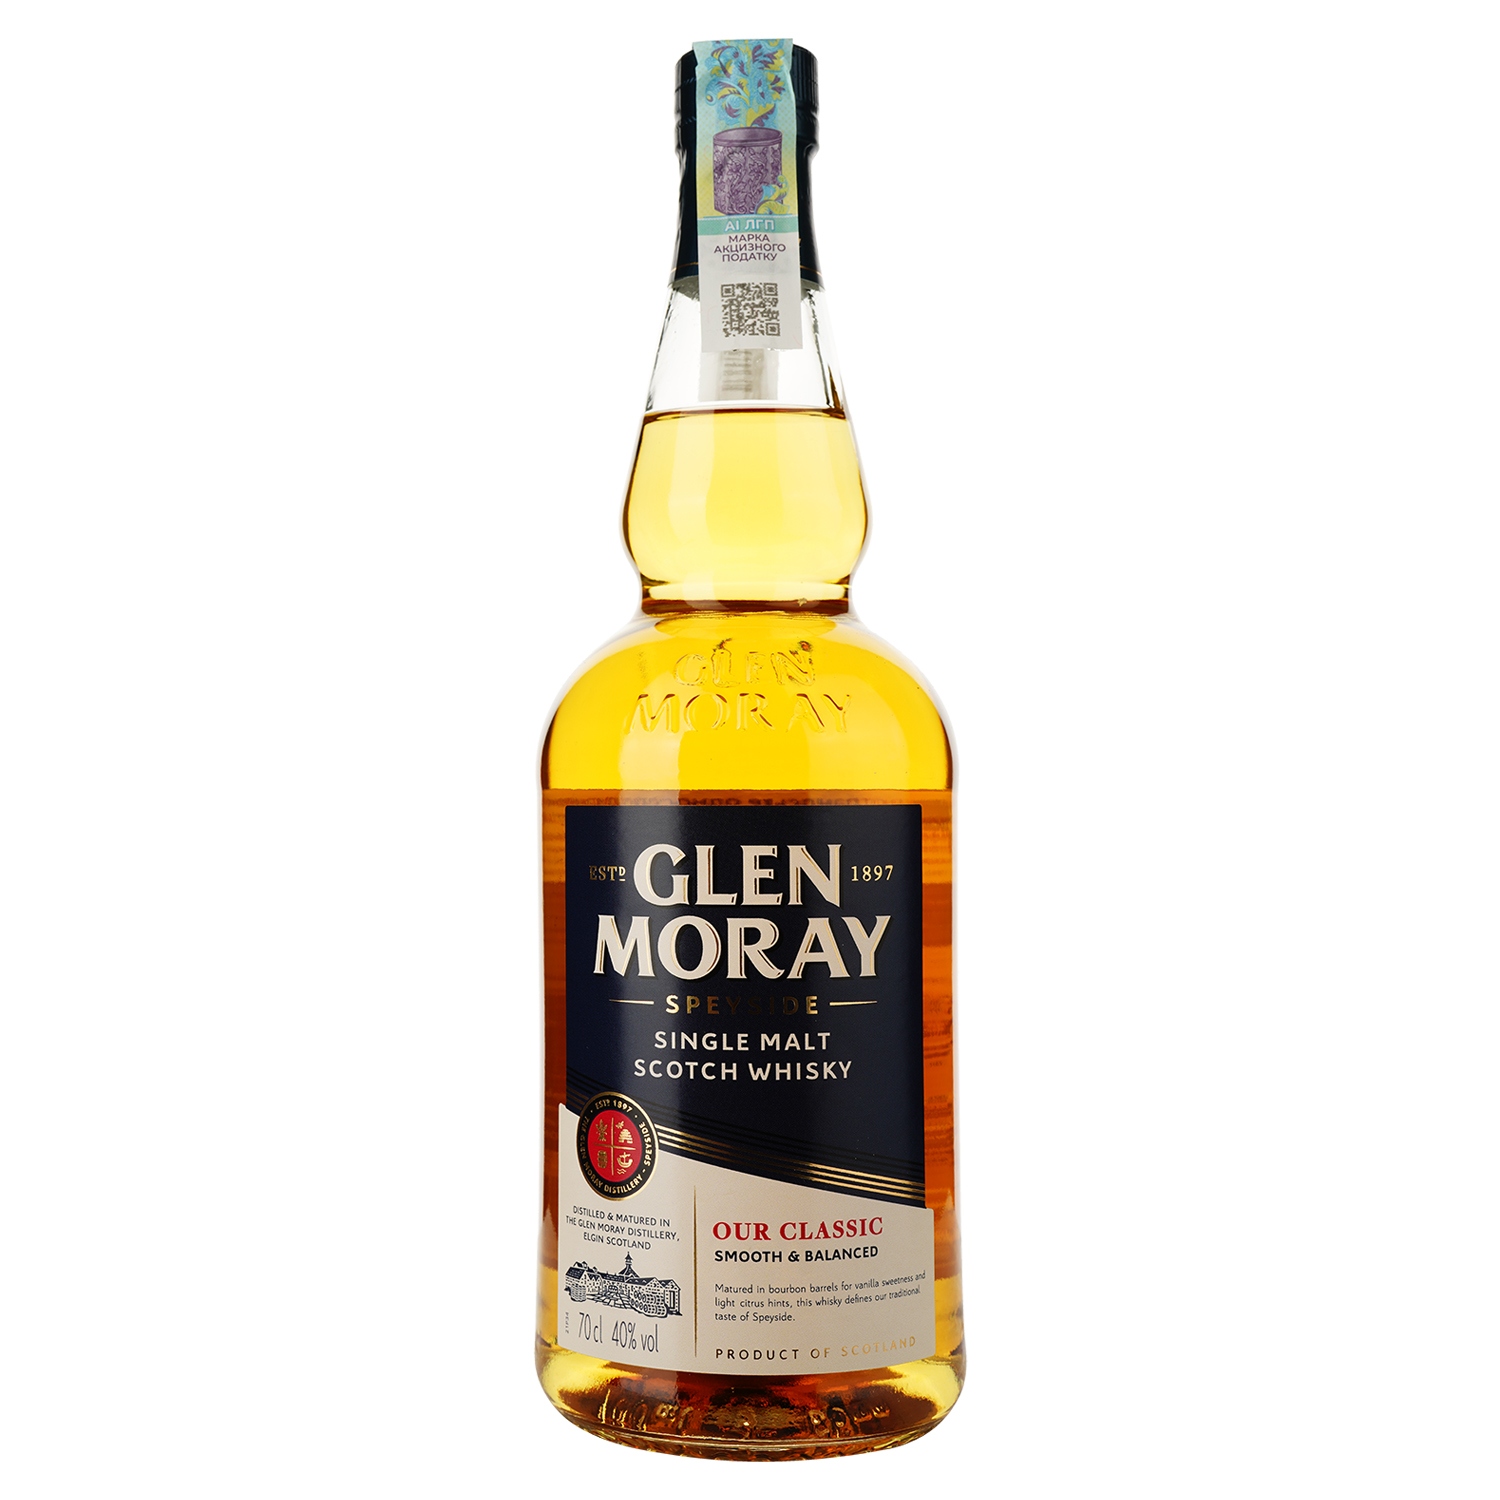 Виски Glen Moray Classic Single Malt Scotch Whisky, в подарочной упаковке, 40%, 0,7 л (739150) - фото 2